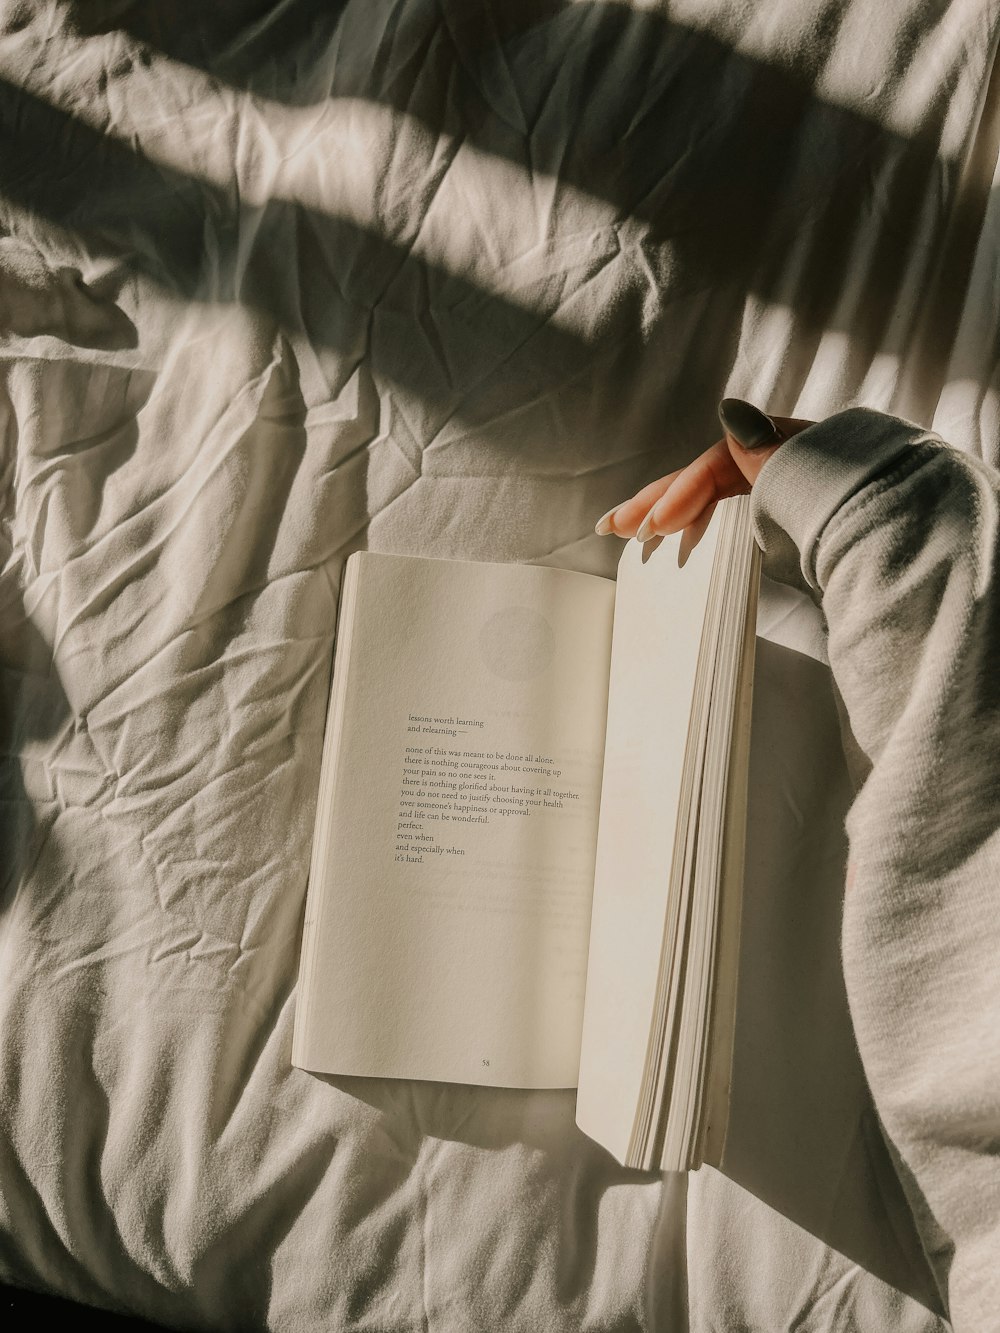 Una persona está leyendo un libro en una cama